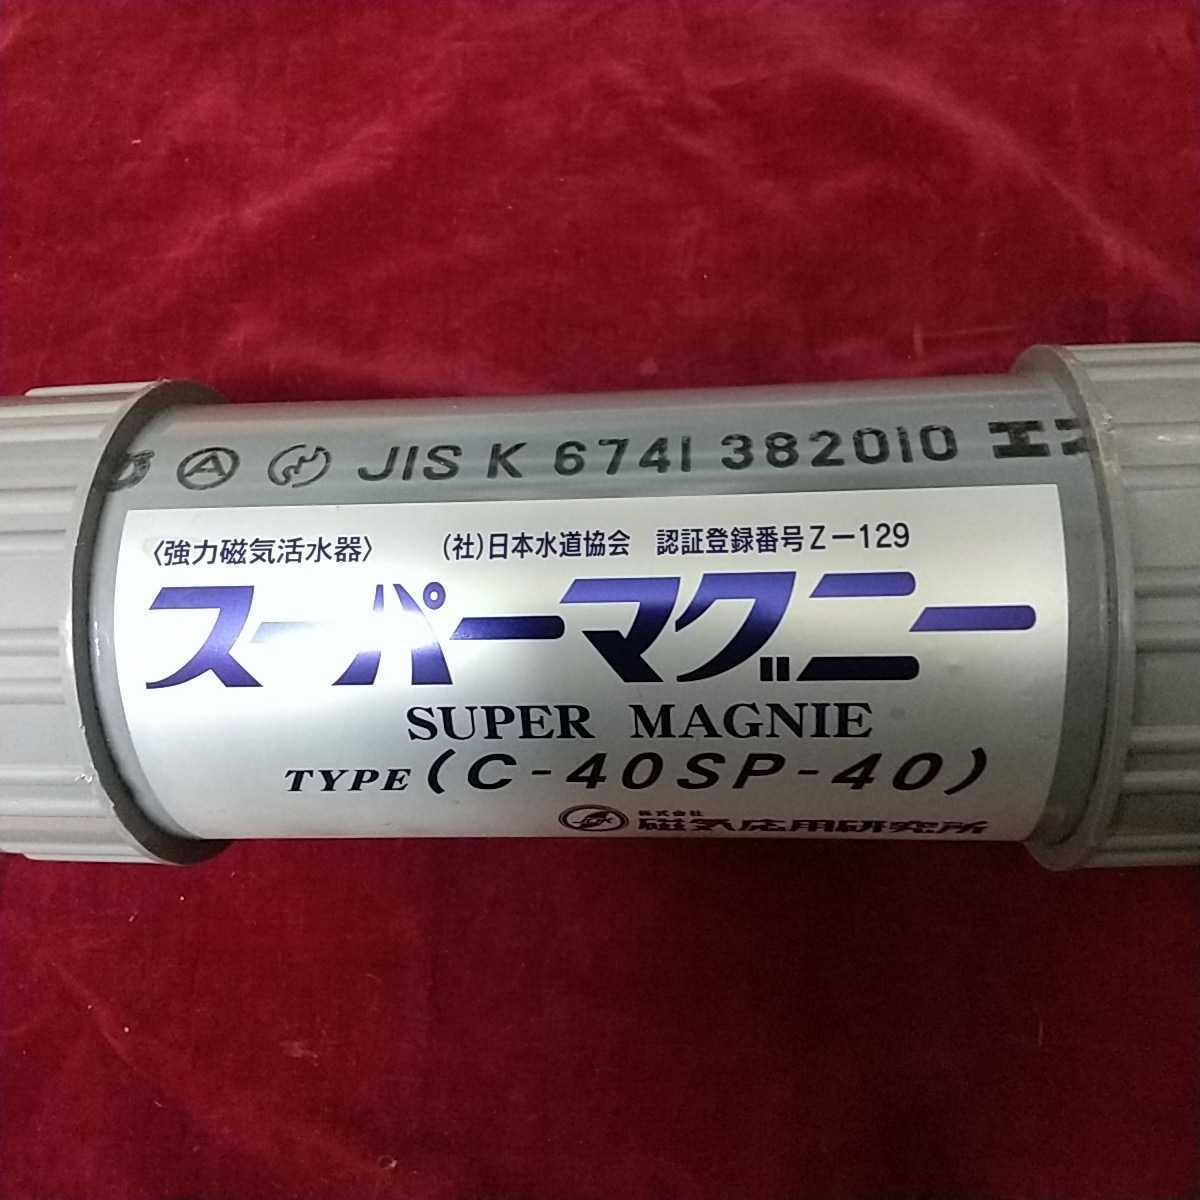 磁気応用研究所製 強力磁気活水器ス-パ -マグニ-c-40sp-40日本水道協会認証登録番号z-129JISK6741382010 水道工事屋さん必見